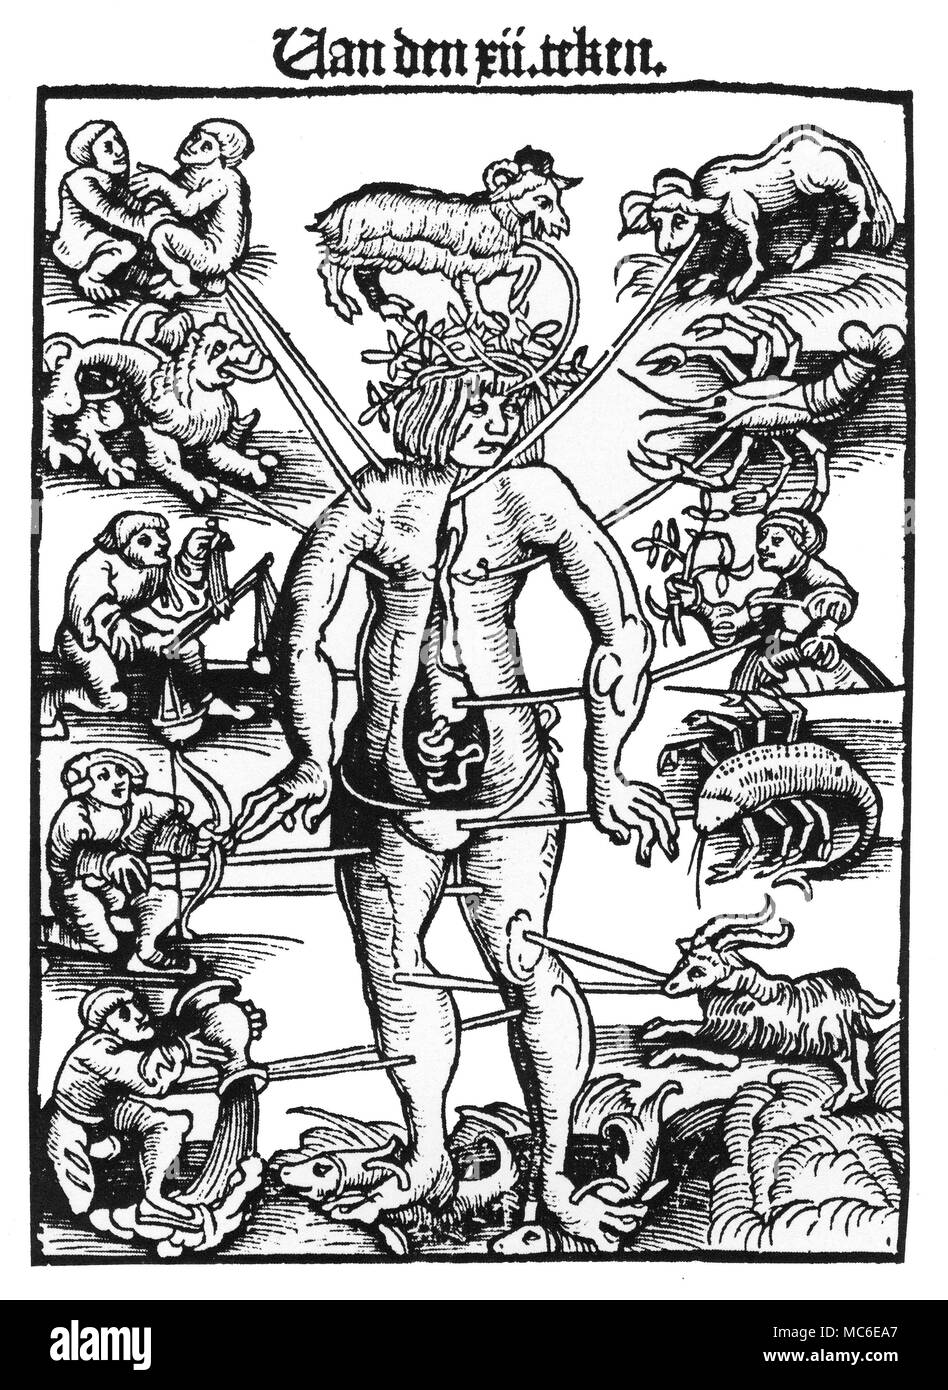 Astrologie - l'homme melothesic du zodiaque, ou soi-disant homme zodiacal, avec la 12 images du zodiaque en rapport avec les pièces internes et externes du corps. À partir de l'édition de 1532 Schapherders Der Kalender. Banque D'Images